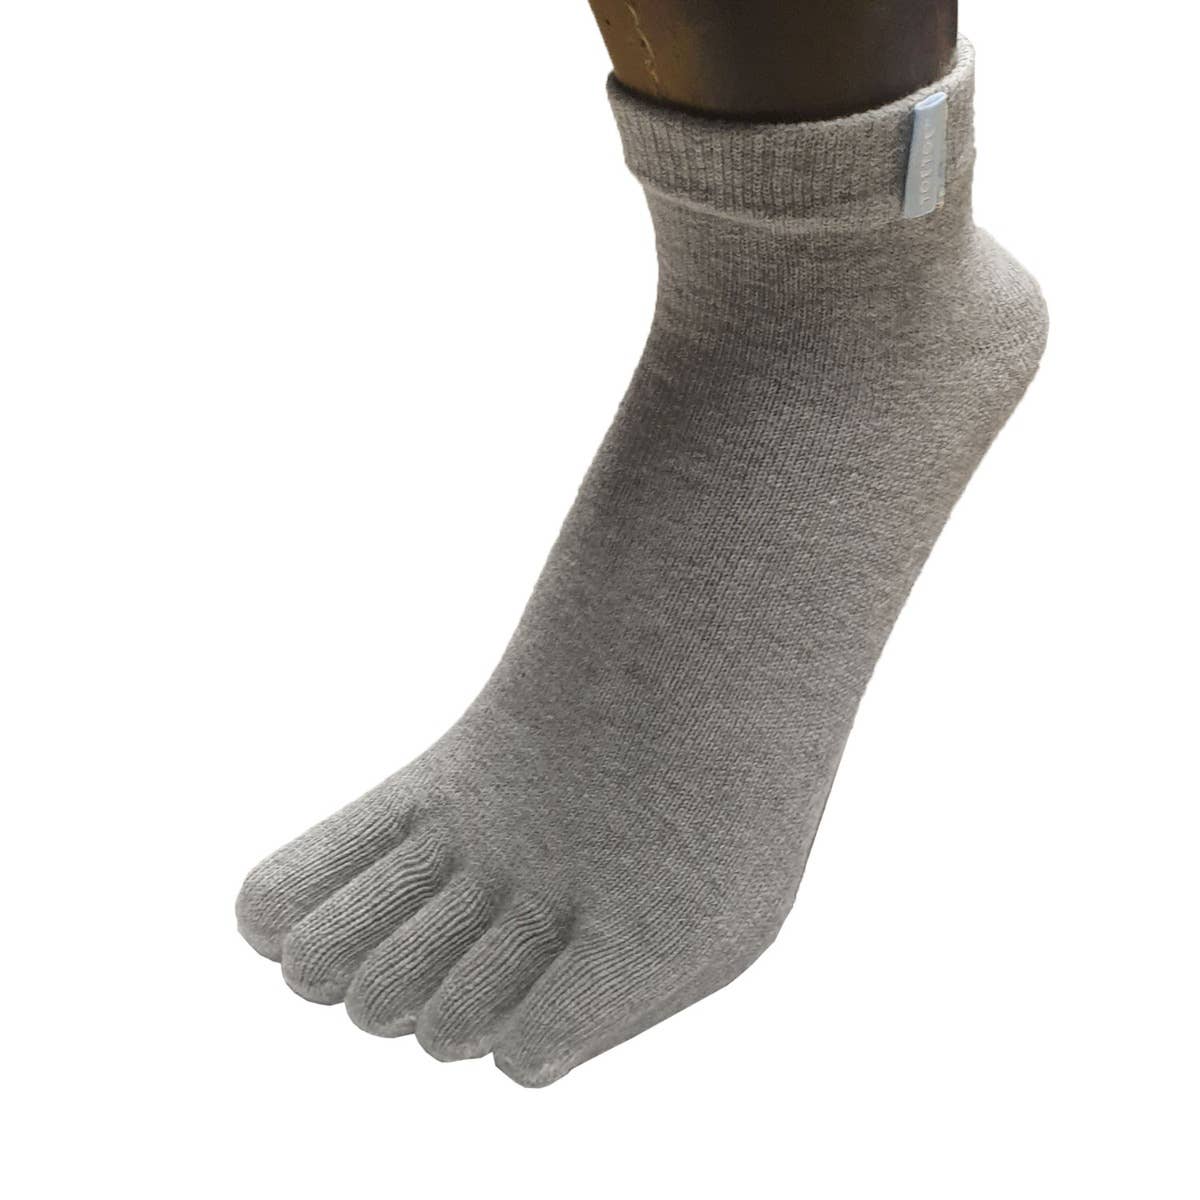 TOETOE - calcetines cortos de dedos - tallas 35-46 / Fuchsia